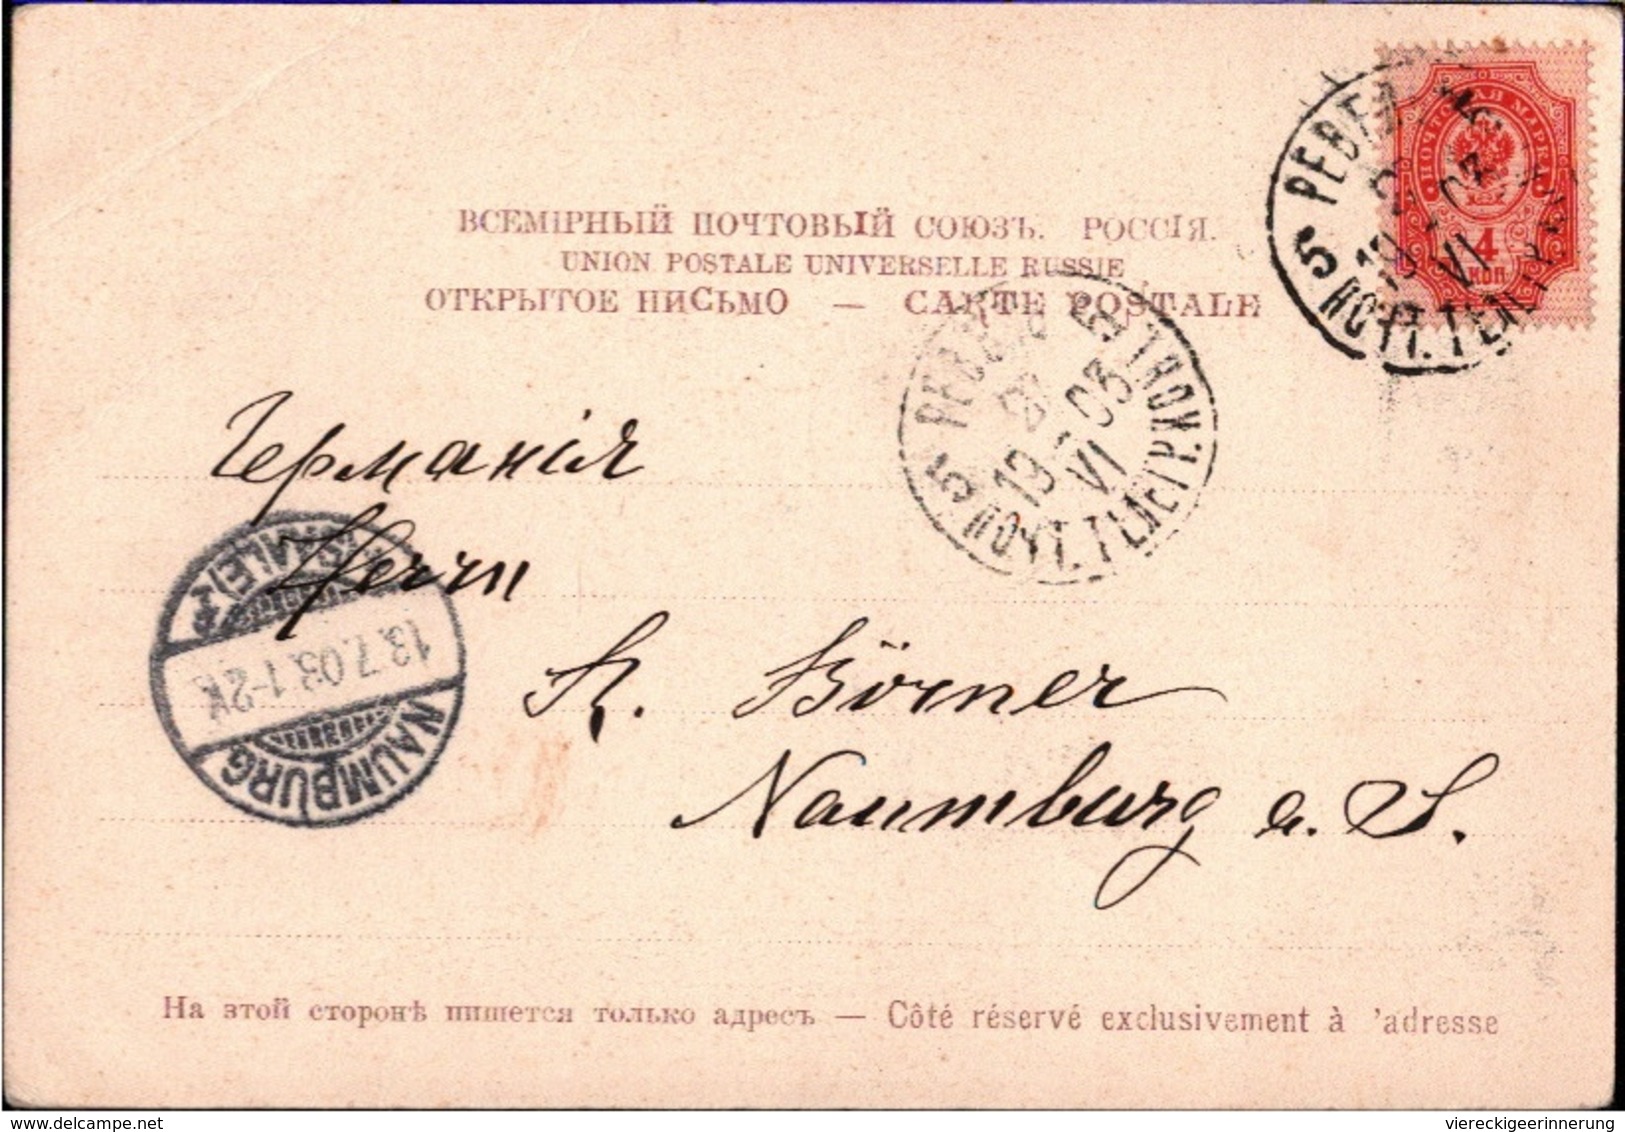 ! Alte Ansichtskarte, Revalsche Zeitung, Reval, Tallinn, 1903, Estland, Newspaper Postcard, Baltikum - Estonia